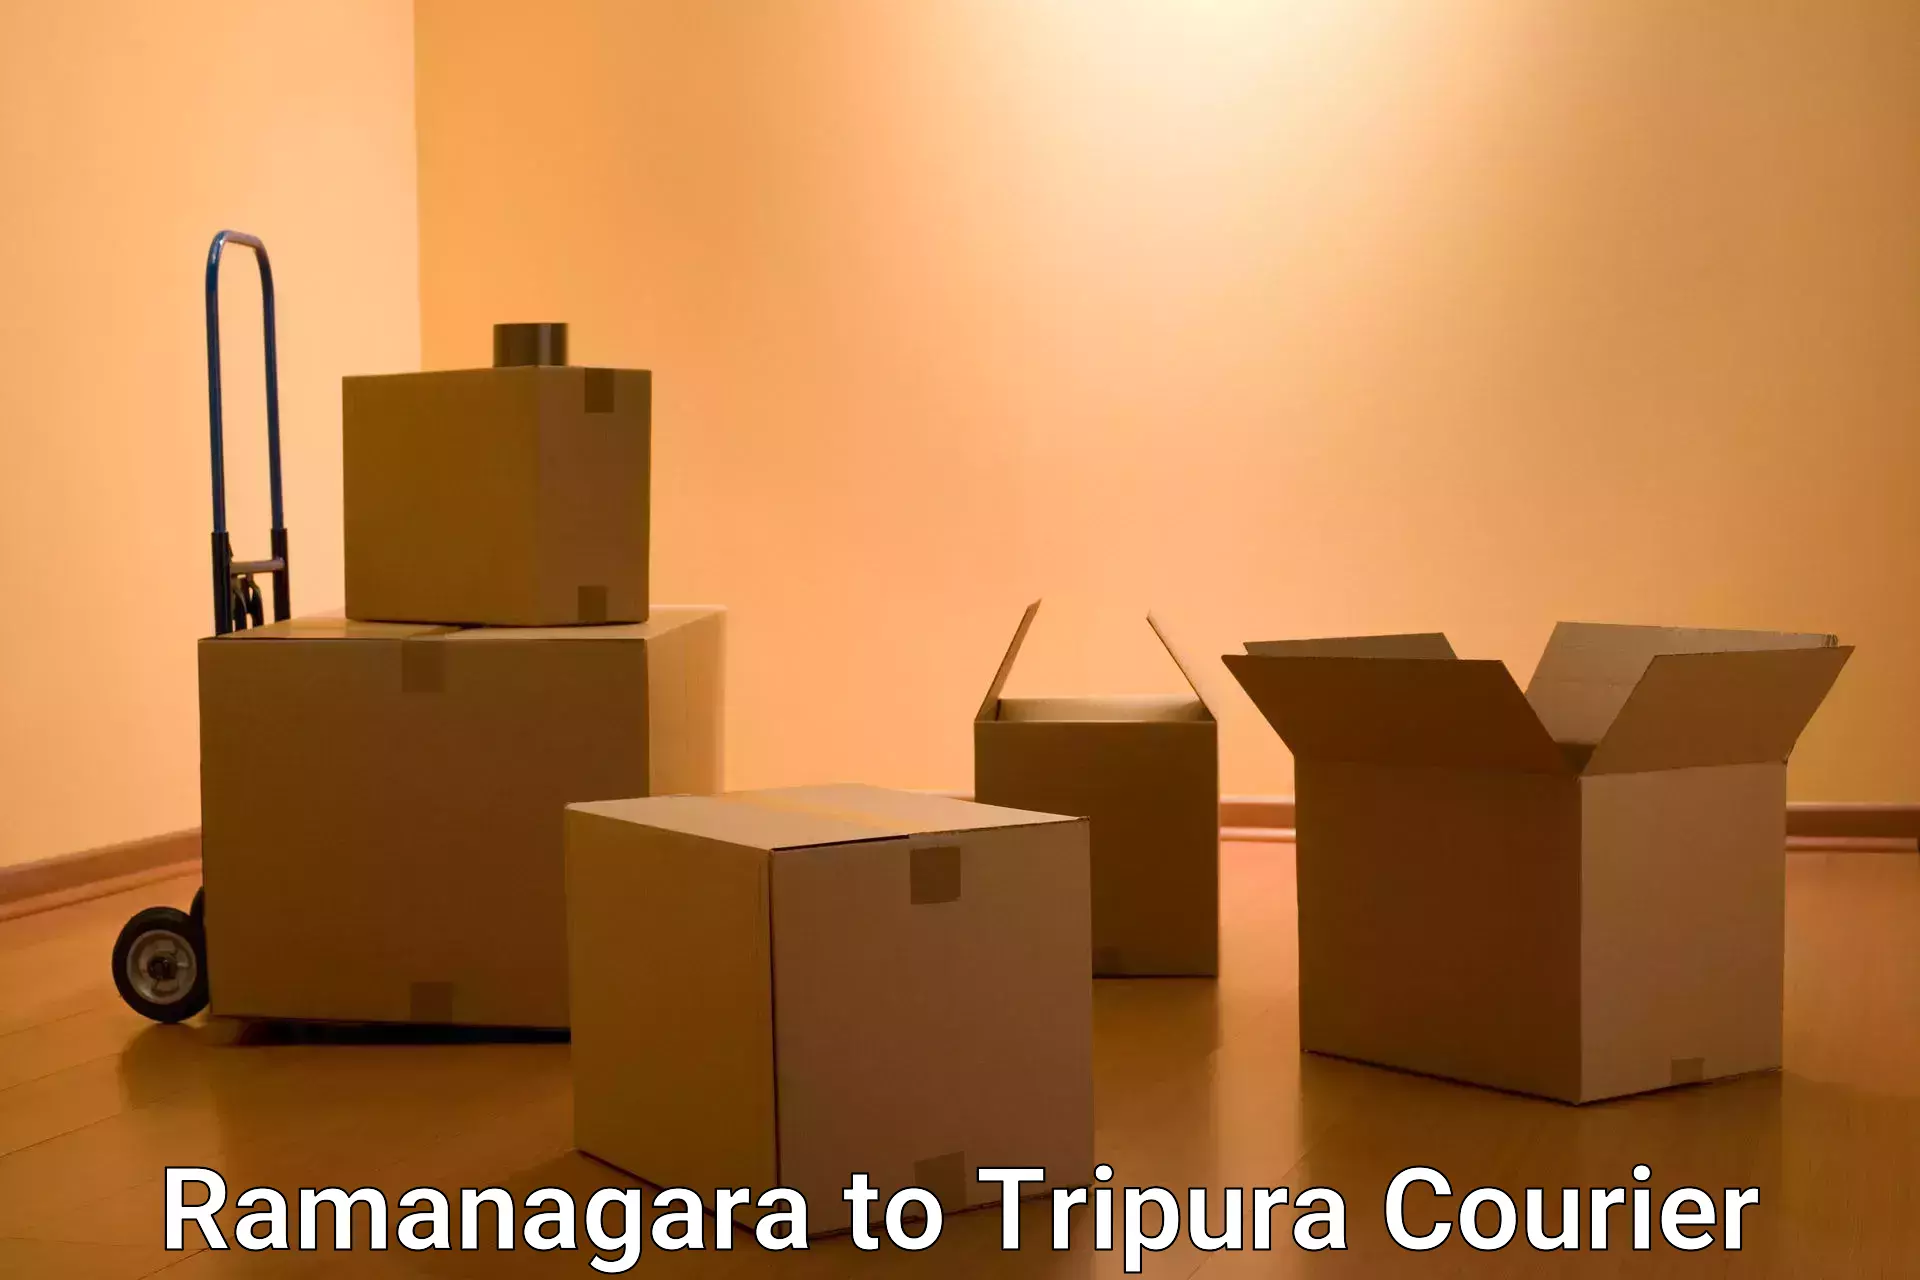 Reliable courier service Ramanagara to Tripura